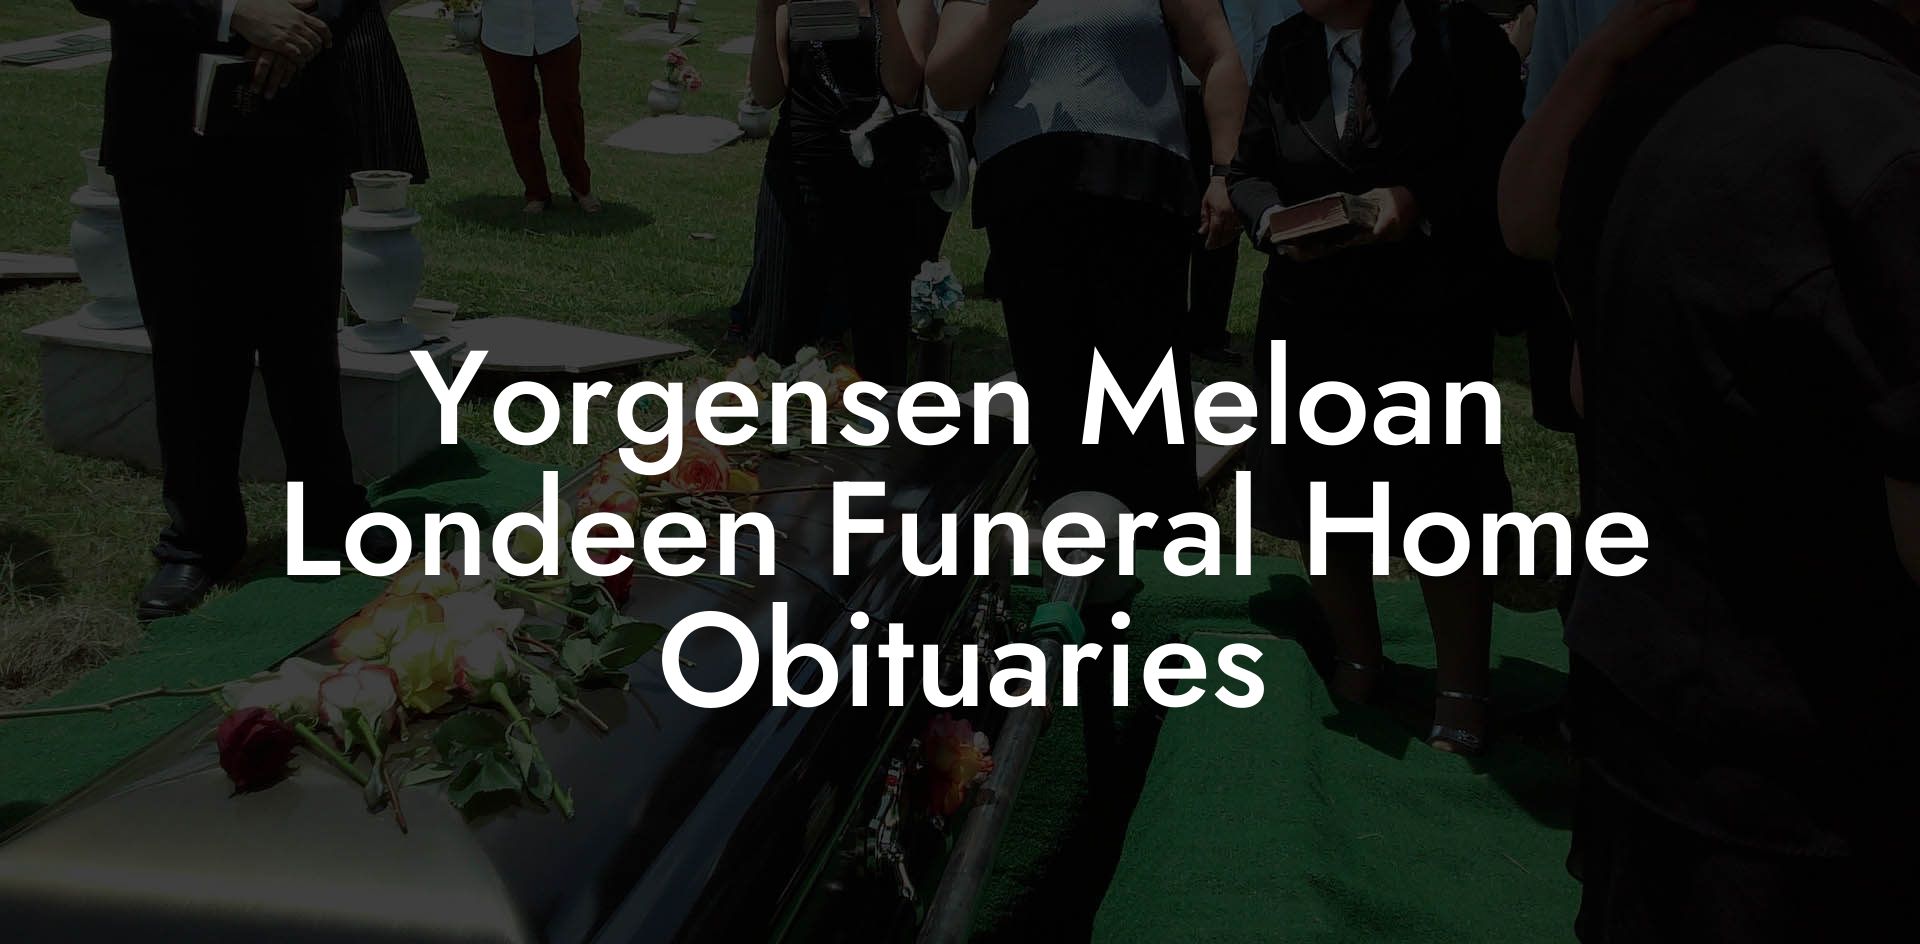 Yorgensen Meloan Londeen Funeral Home Obituaries